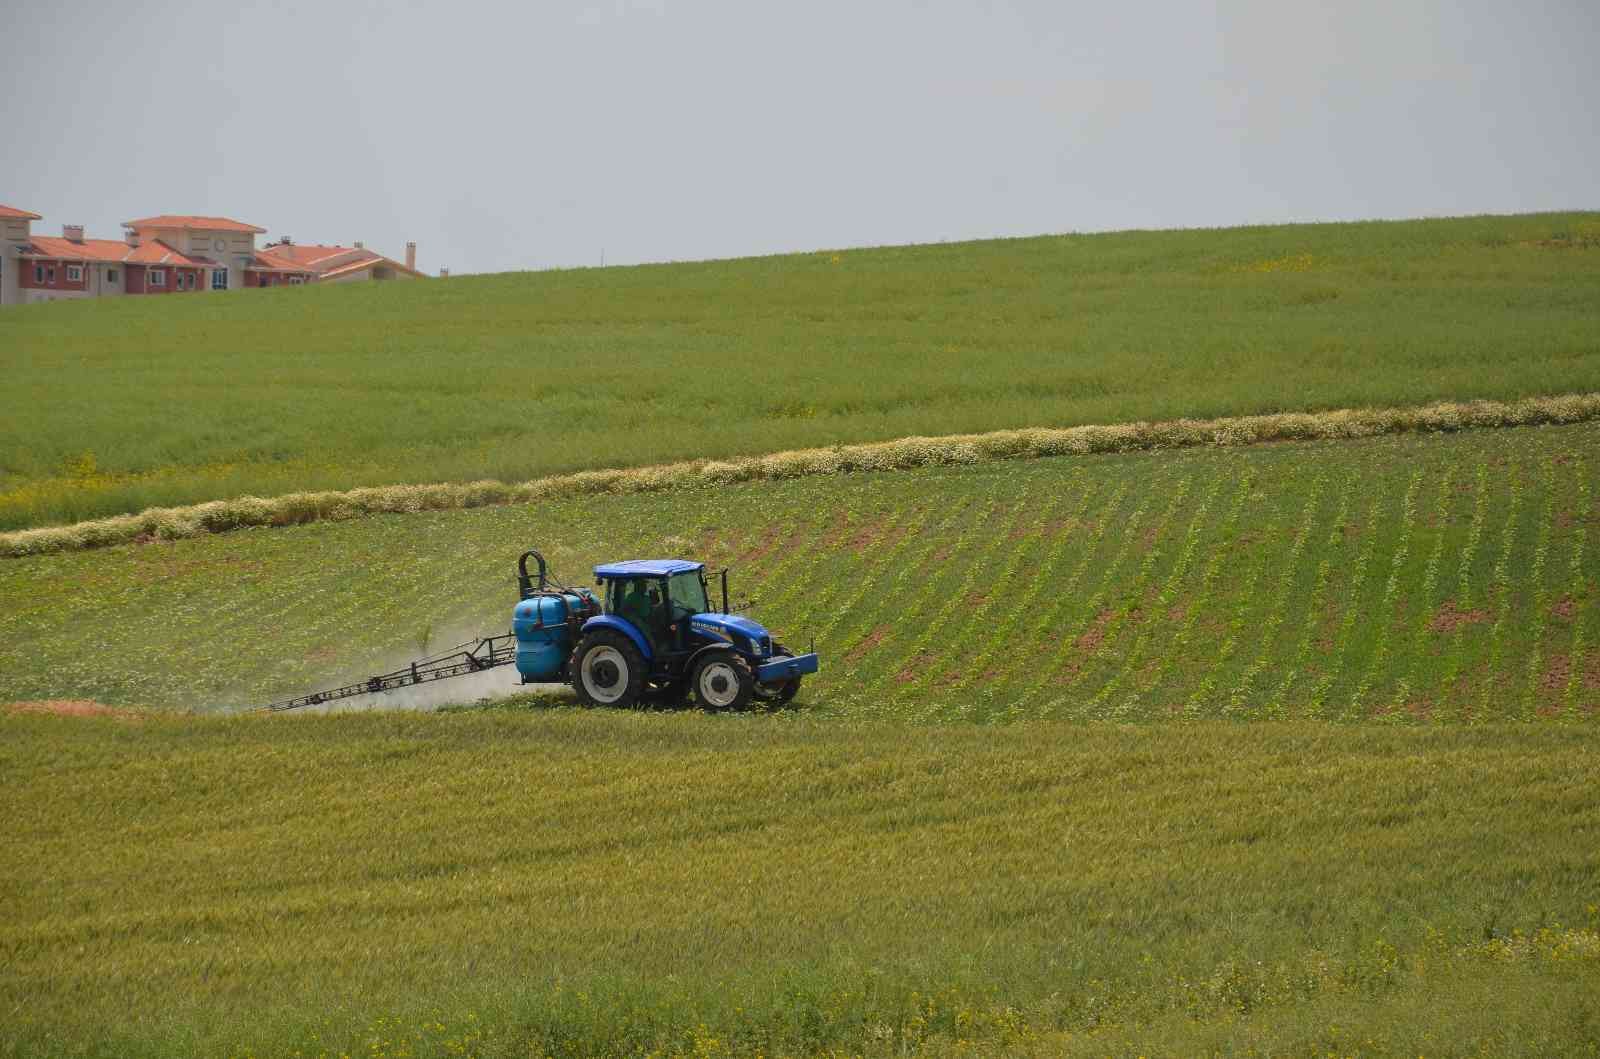 Ulusal Hububat Konseyi’nin bu yılki buğday rekoltesine ilişkin raporuna göre, Türkiye’nin 2022 yılı buğday rekoltesinin geçen yıla göre 17 milyon ...